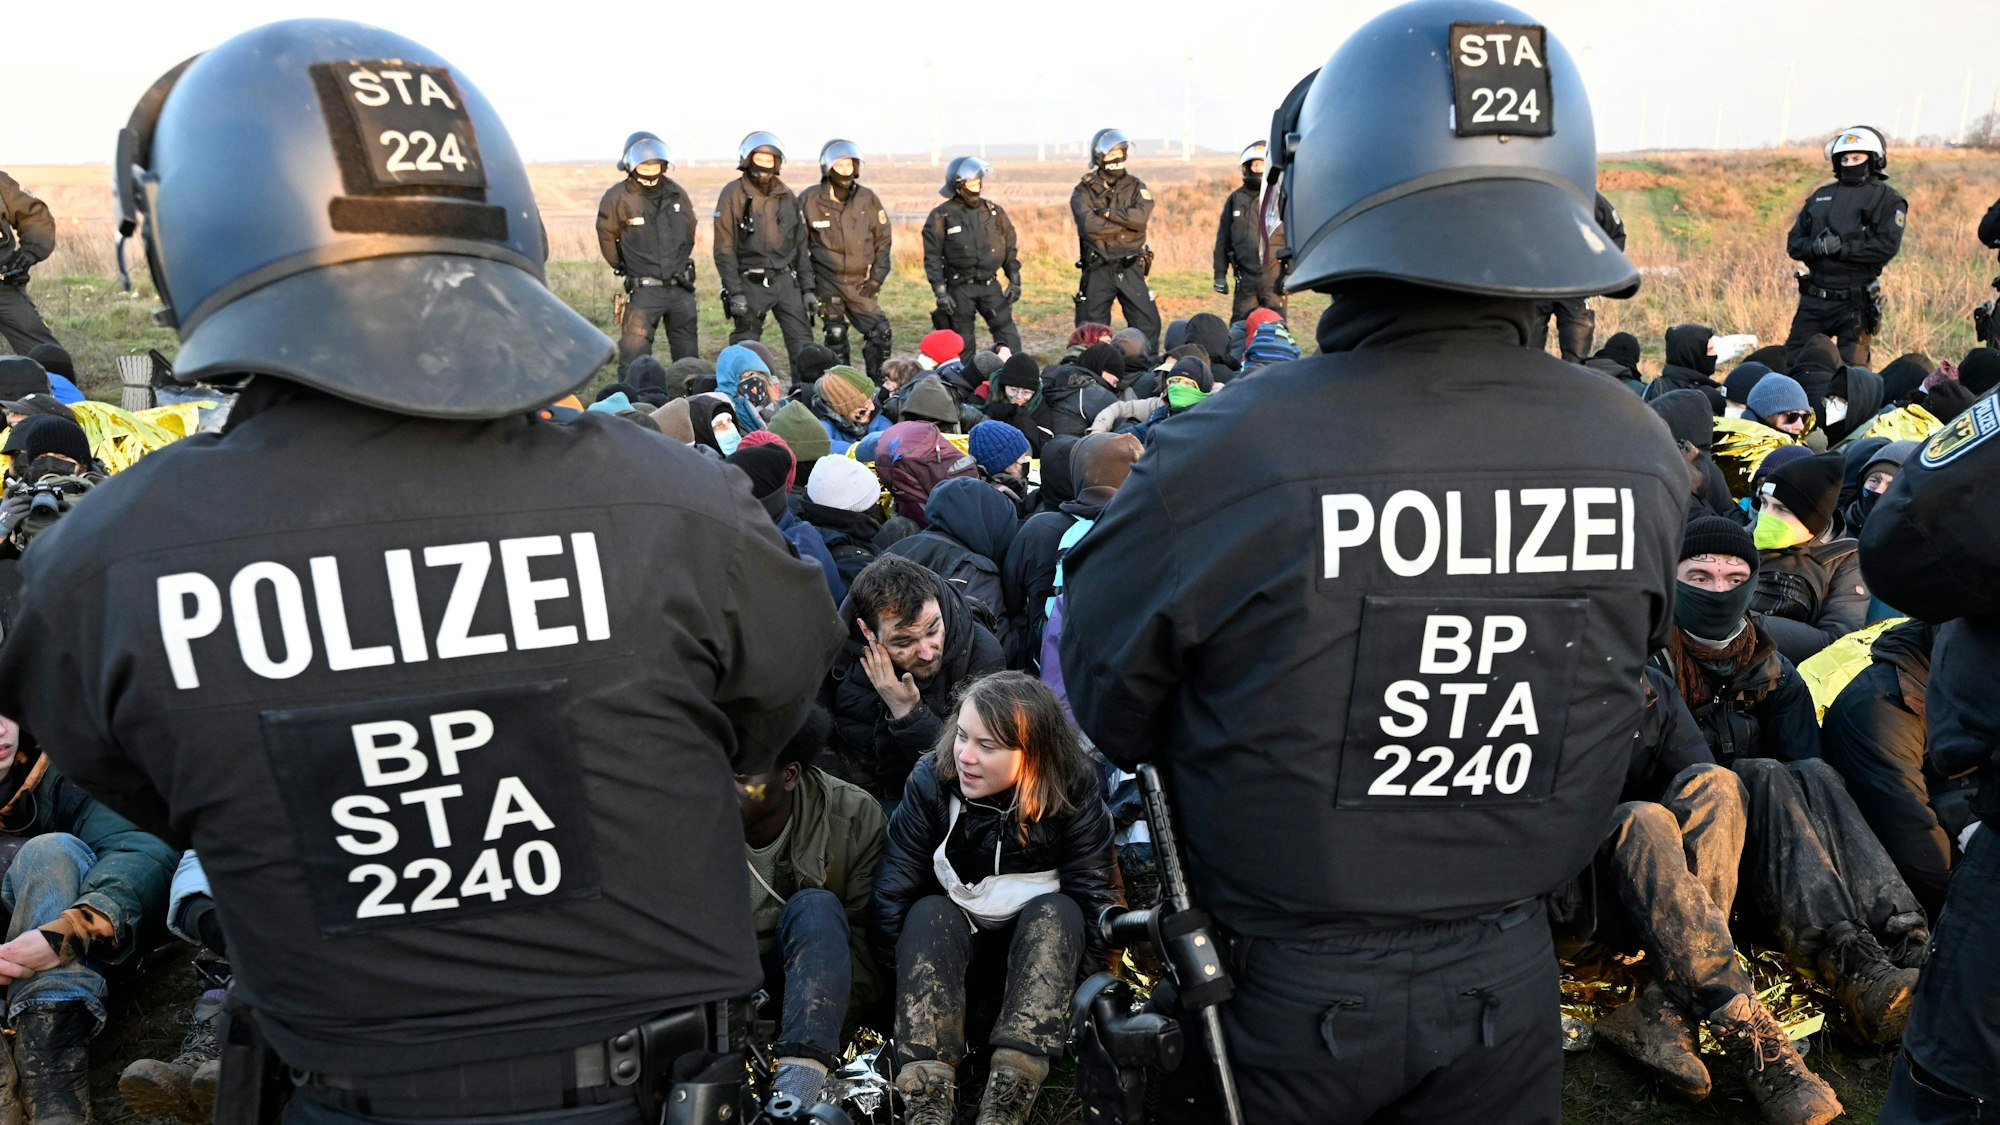 Polizisten stehen vor einer Gruppe von Demonstranten, darunter auch die die schwedische Klimaaktivistin Greta Thunberg (Mitte, unten), am Rand des Braunkohlentagebaus Garzweiler II bei einer Protestaktion von Klimaaktivisten nach der Räumung von Lützerath. Aktivisten und Kohle-Gegner setzen ihre Proteste am Dienstag an mehreren Orten in Nordrhein-Westfalen fort. +++ dpa-Bildfunk +++